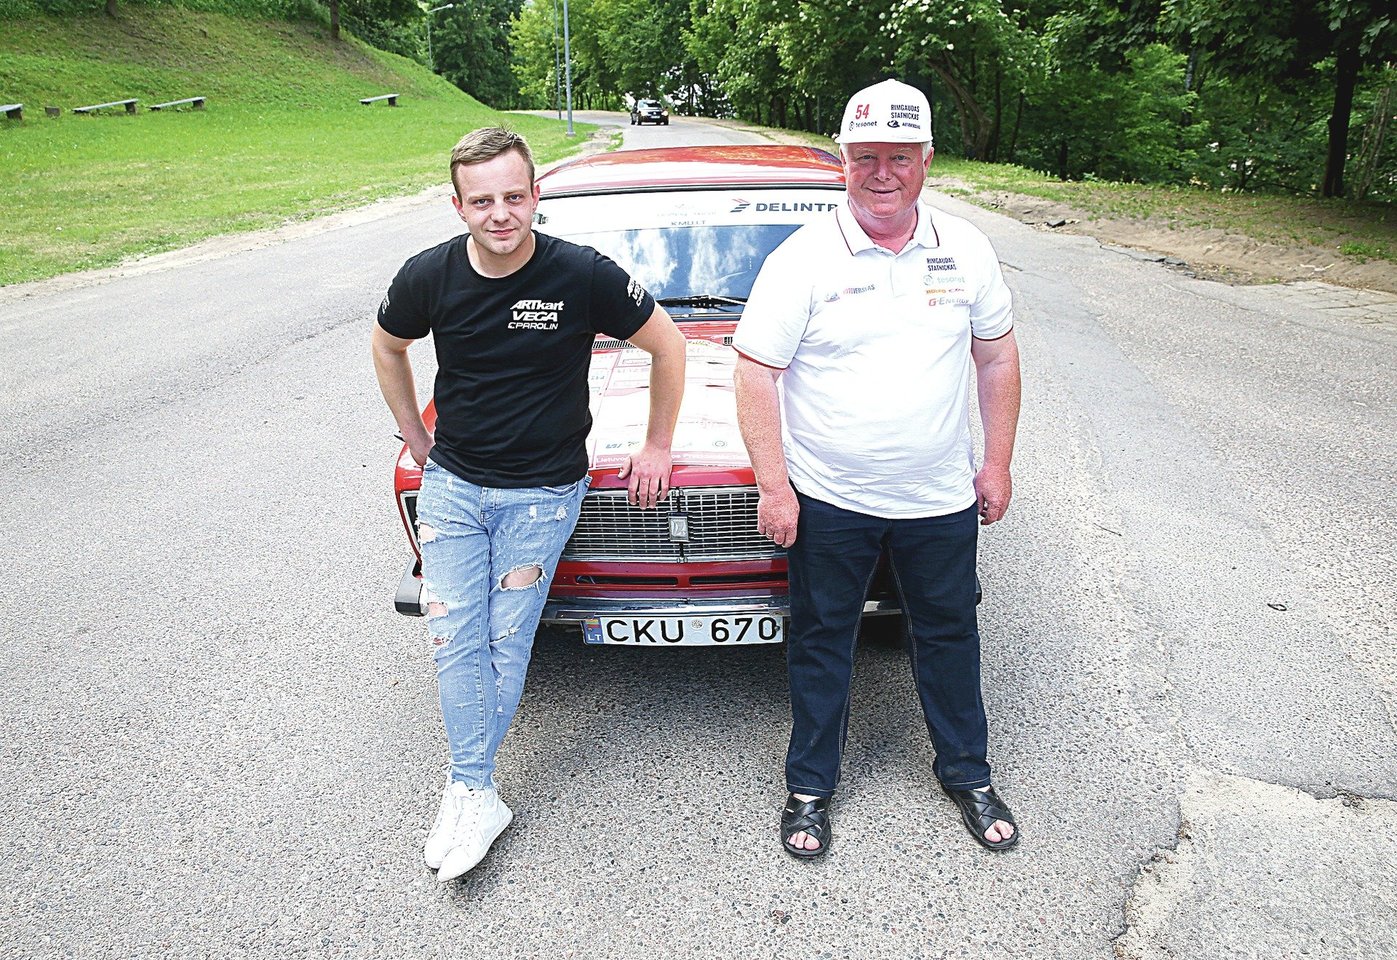 Iš Klaipėdos kilęs Juliaus tėvas lenktynininkas Rimgaudas Statnickas yra vienas labiausiai patyrusių vis dar lenktyniaujančių sportininkų Lietuvoje.